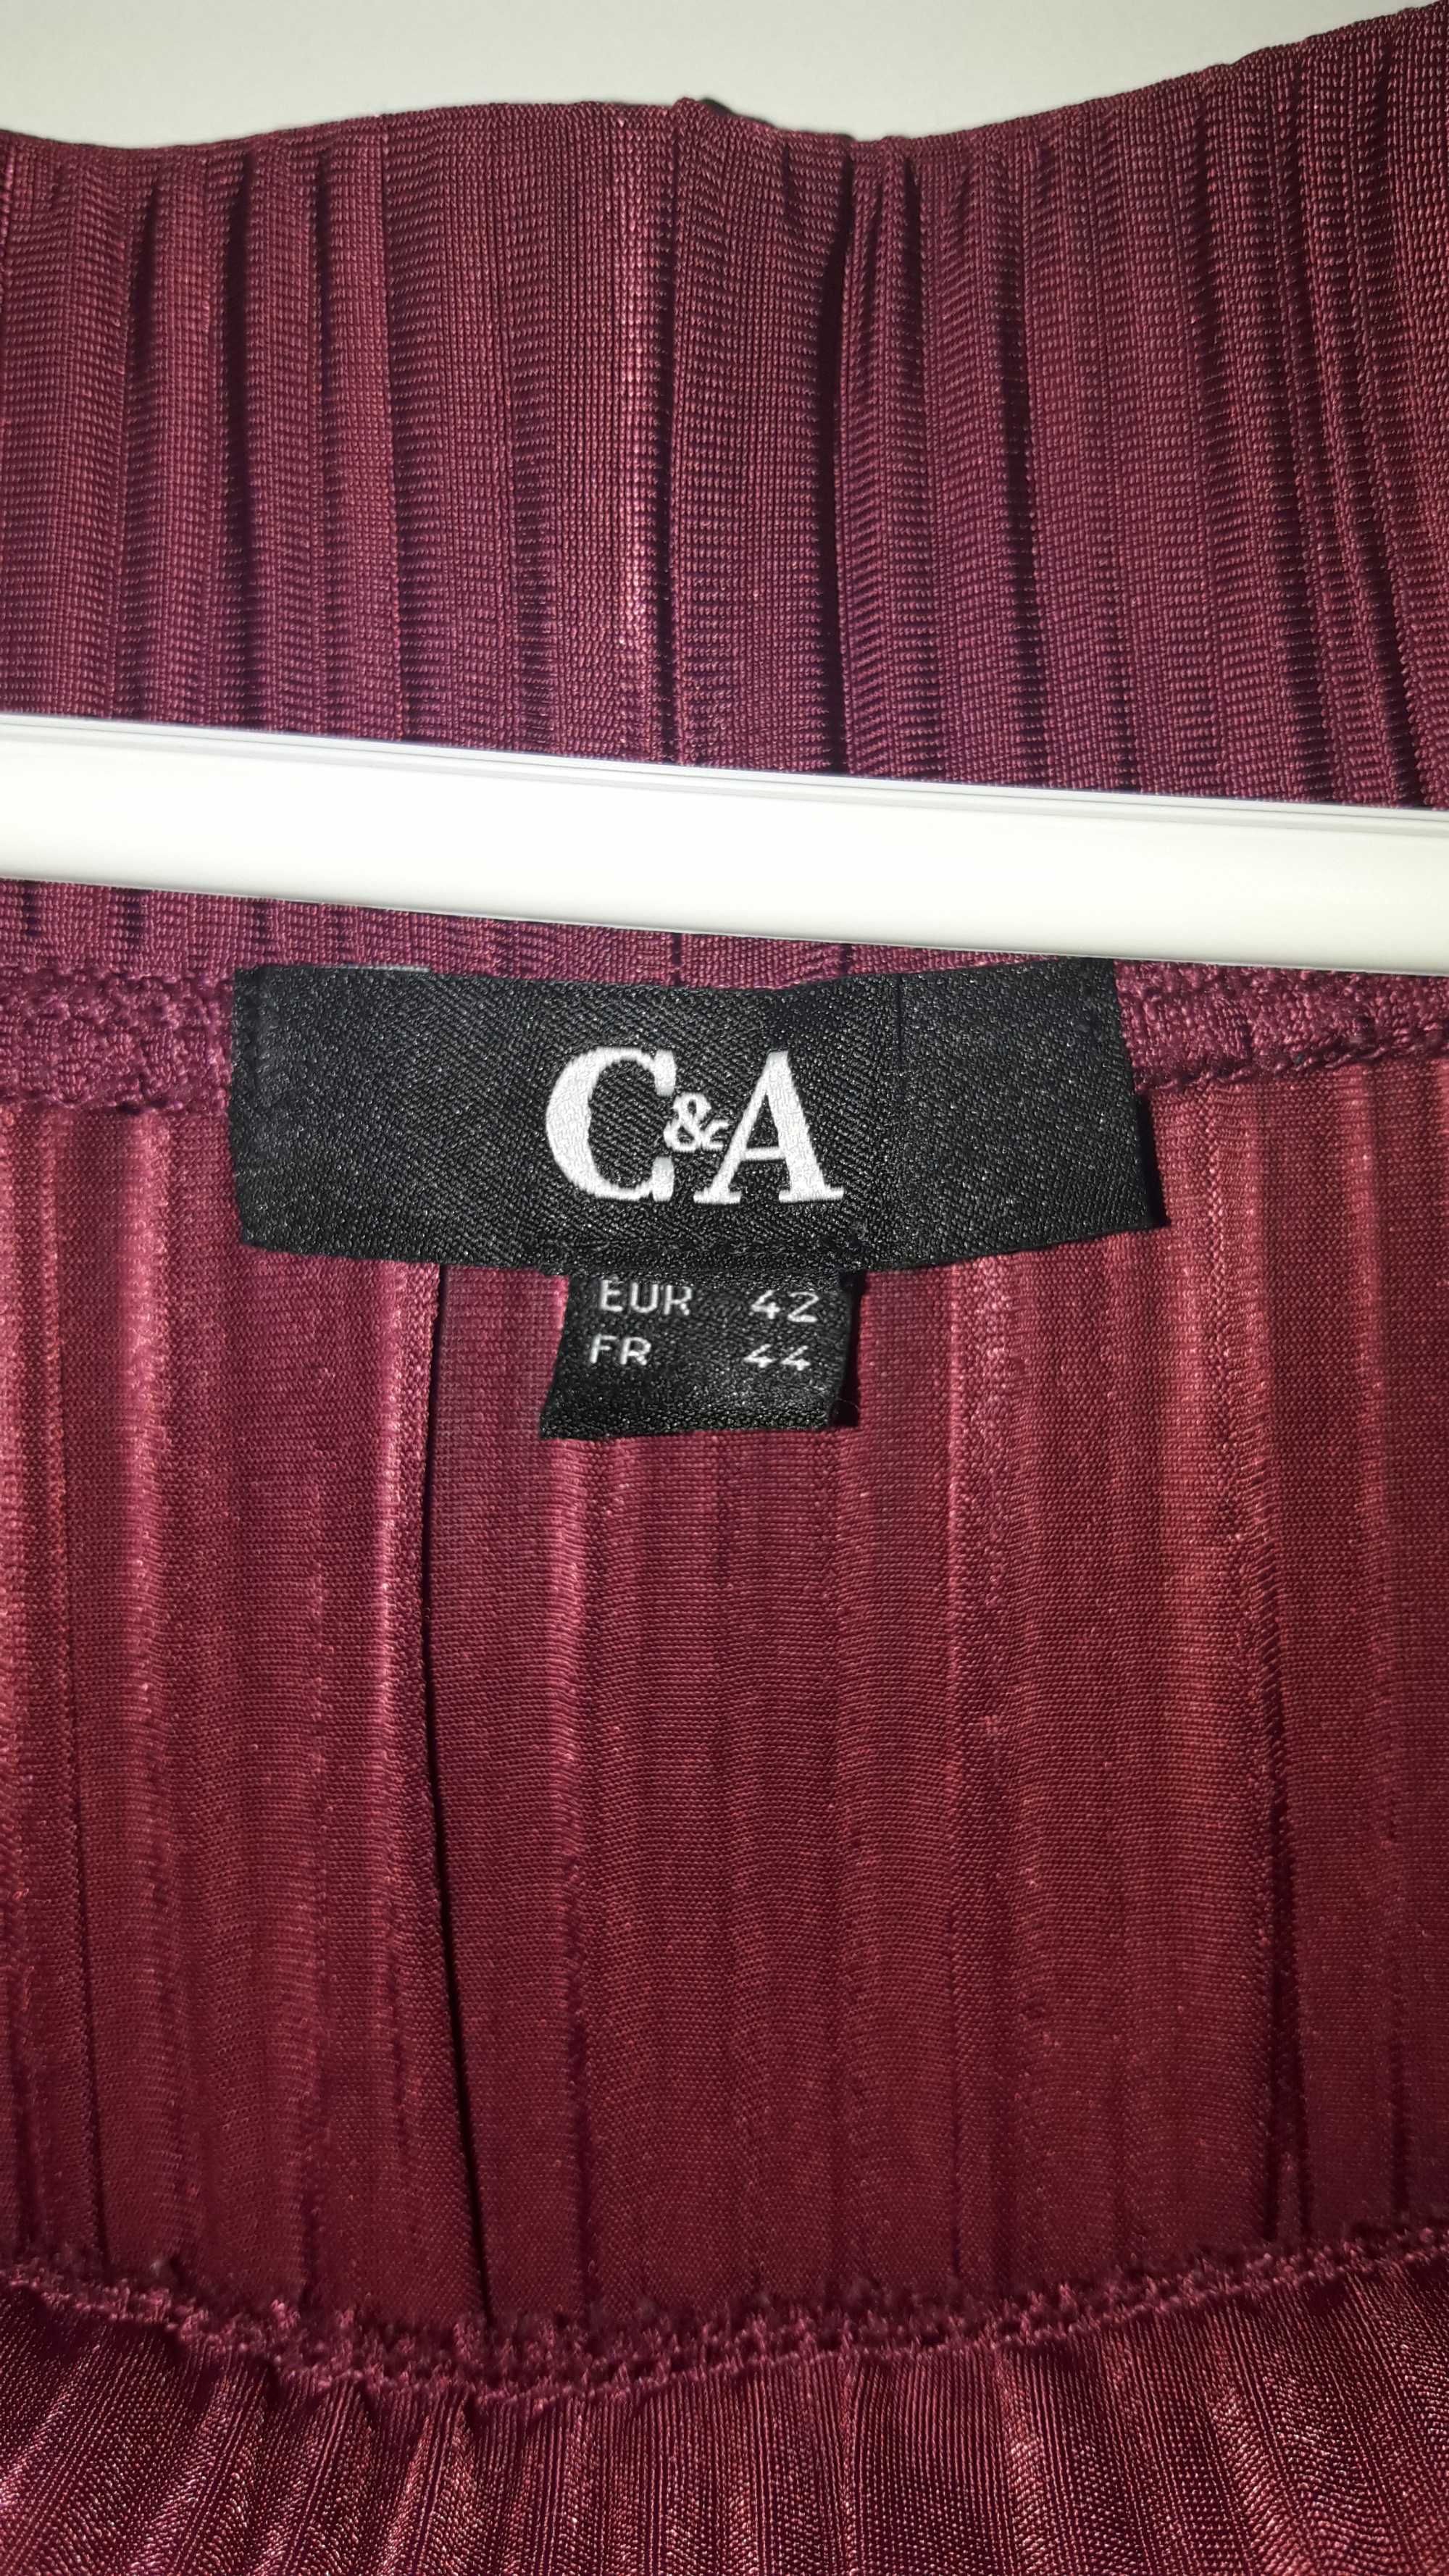 C&A Spódnica plisowana bordowa roz. 42